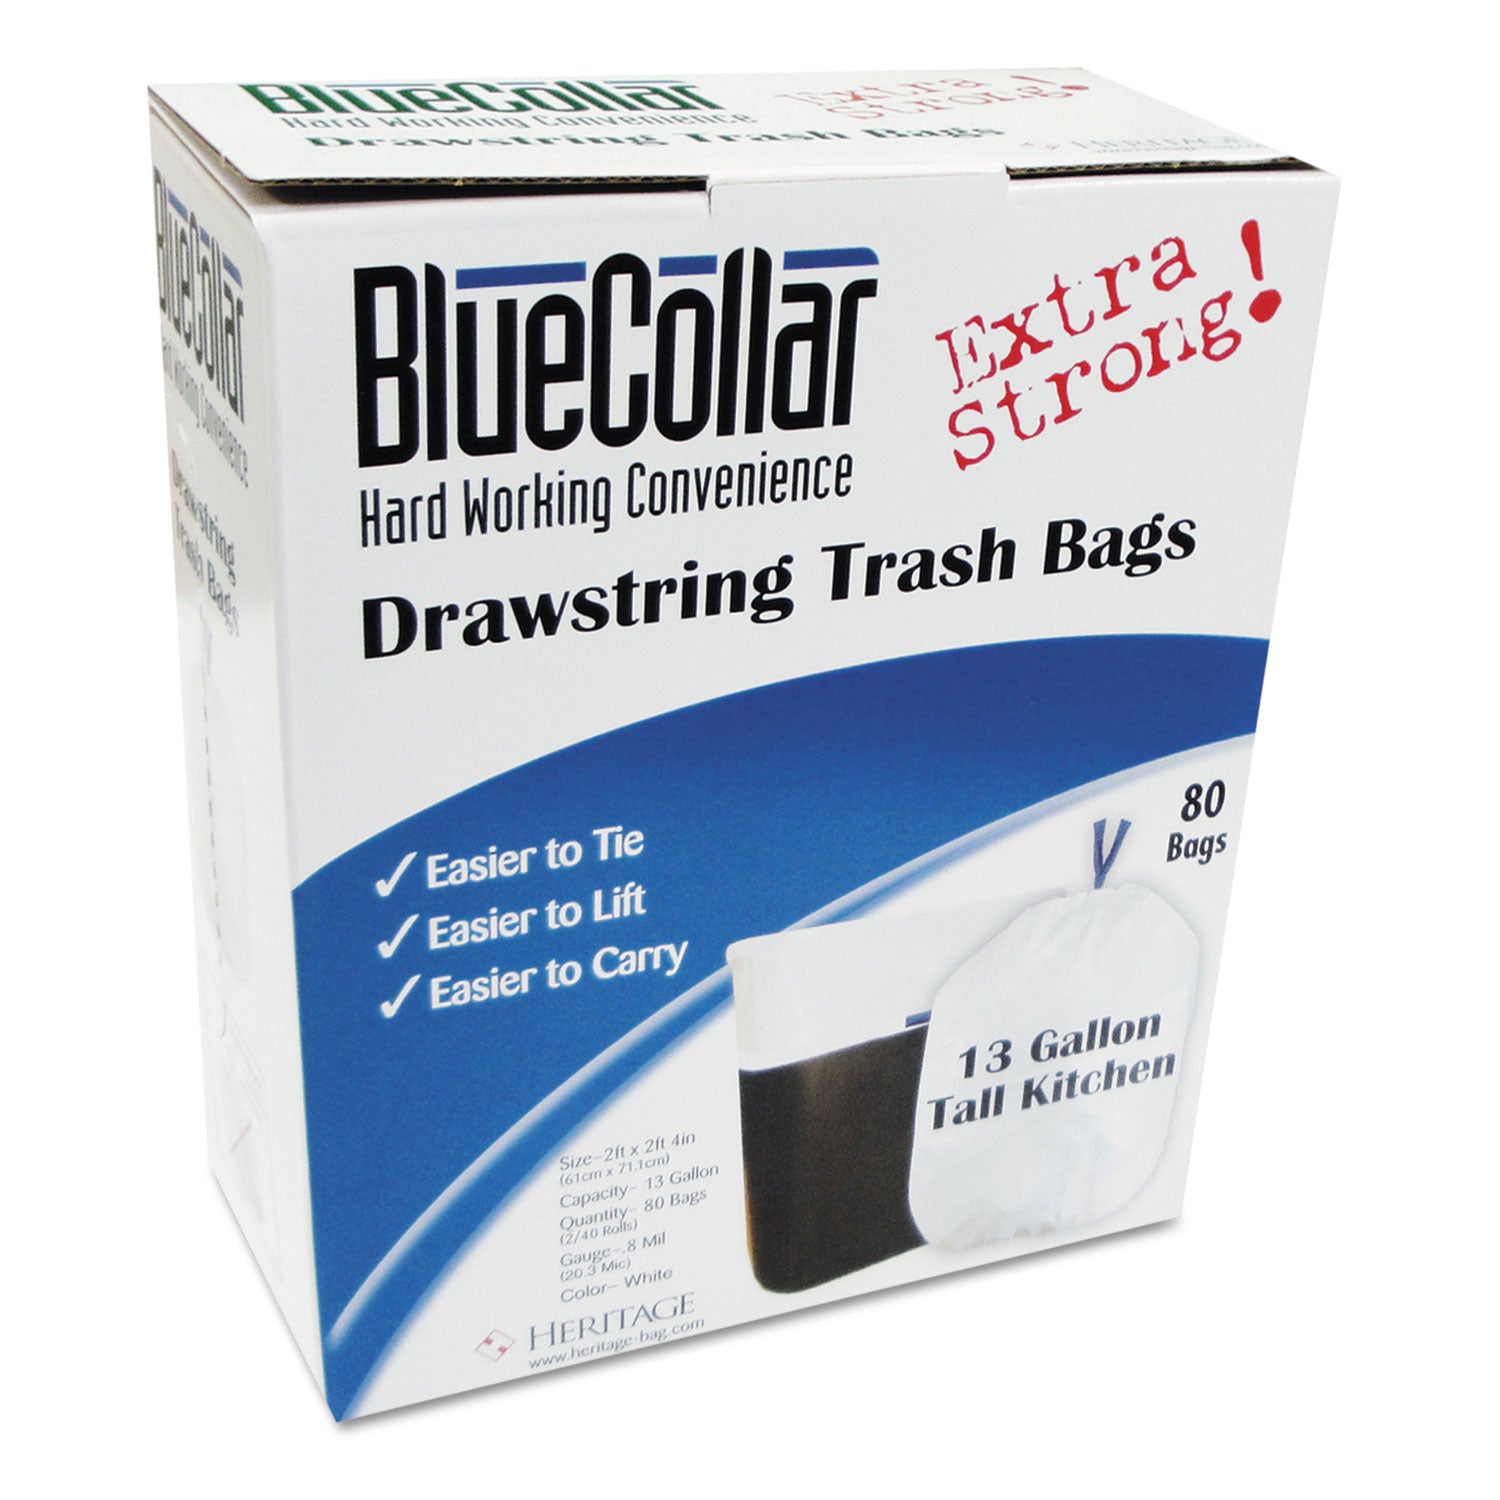 Drawstring Trash Bags, 13 gal, 0.8 mil, 24" x 28", White, 40 Bags/Roll, 2 Rolls/Box - 1